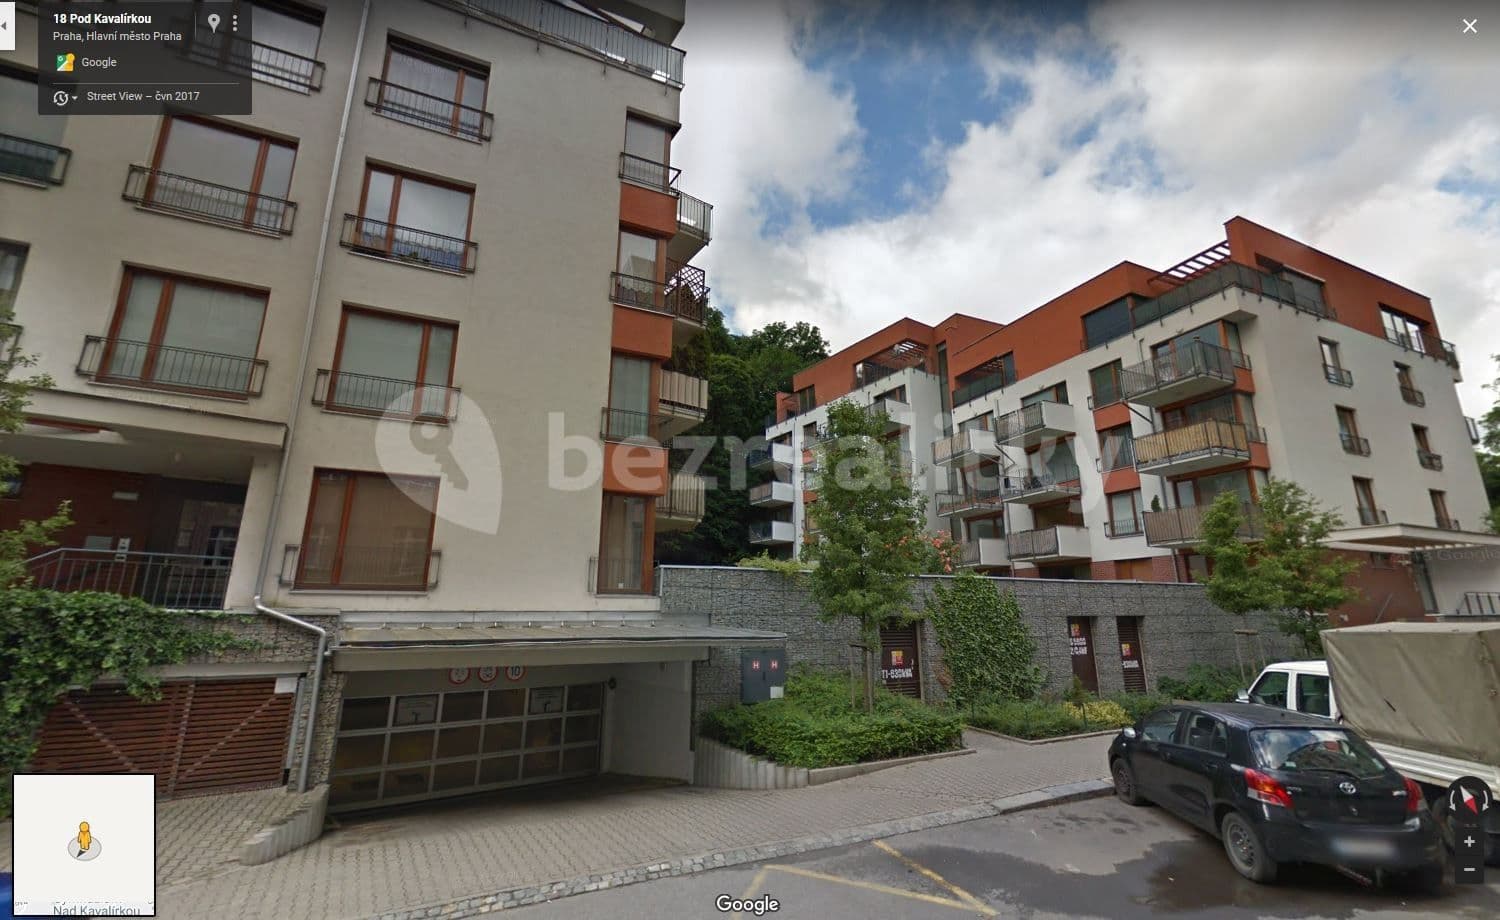 Prenájom bytu 2-izbový 59 m², Pod Kavalírkou, Praha, Praha